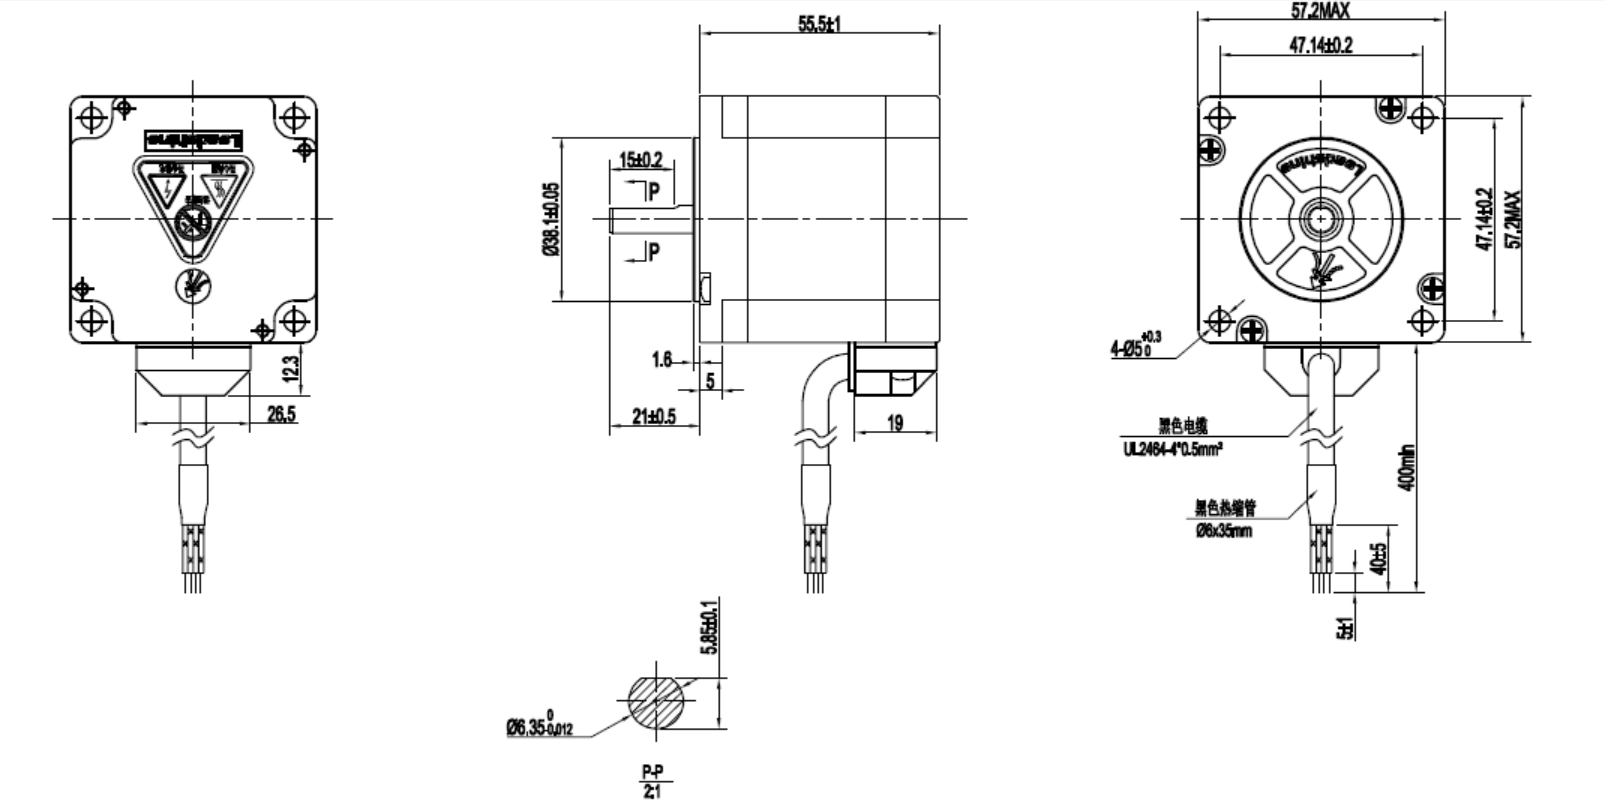 Μηχανικό σχέδιο- διάγραμμα stepper motor 57cm13